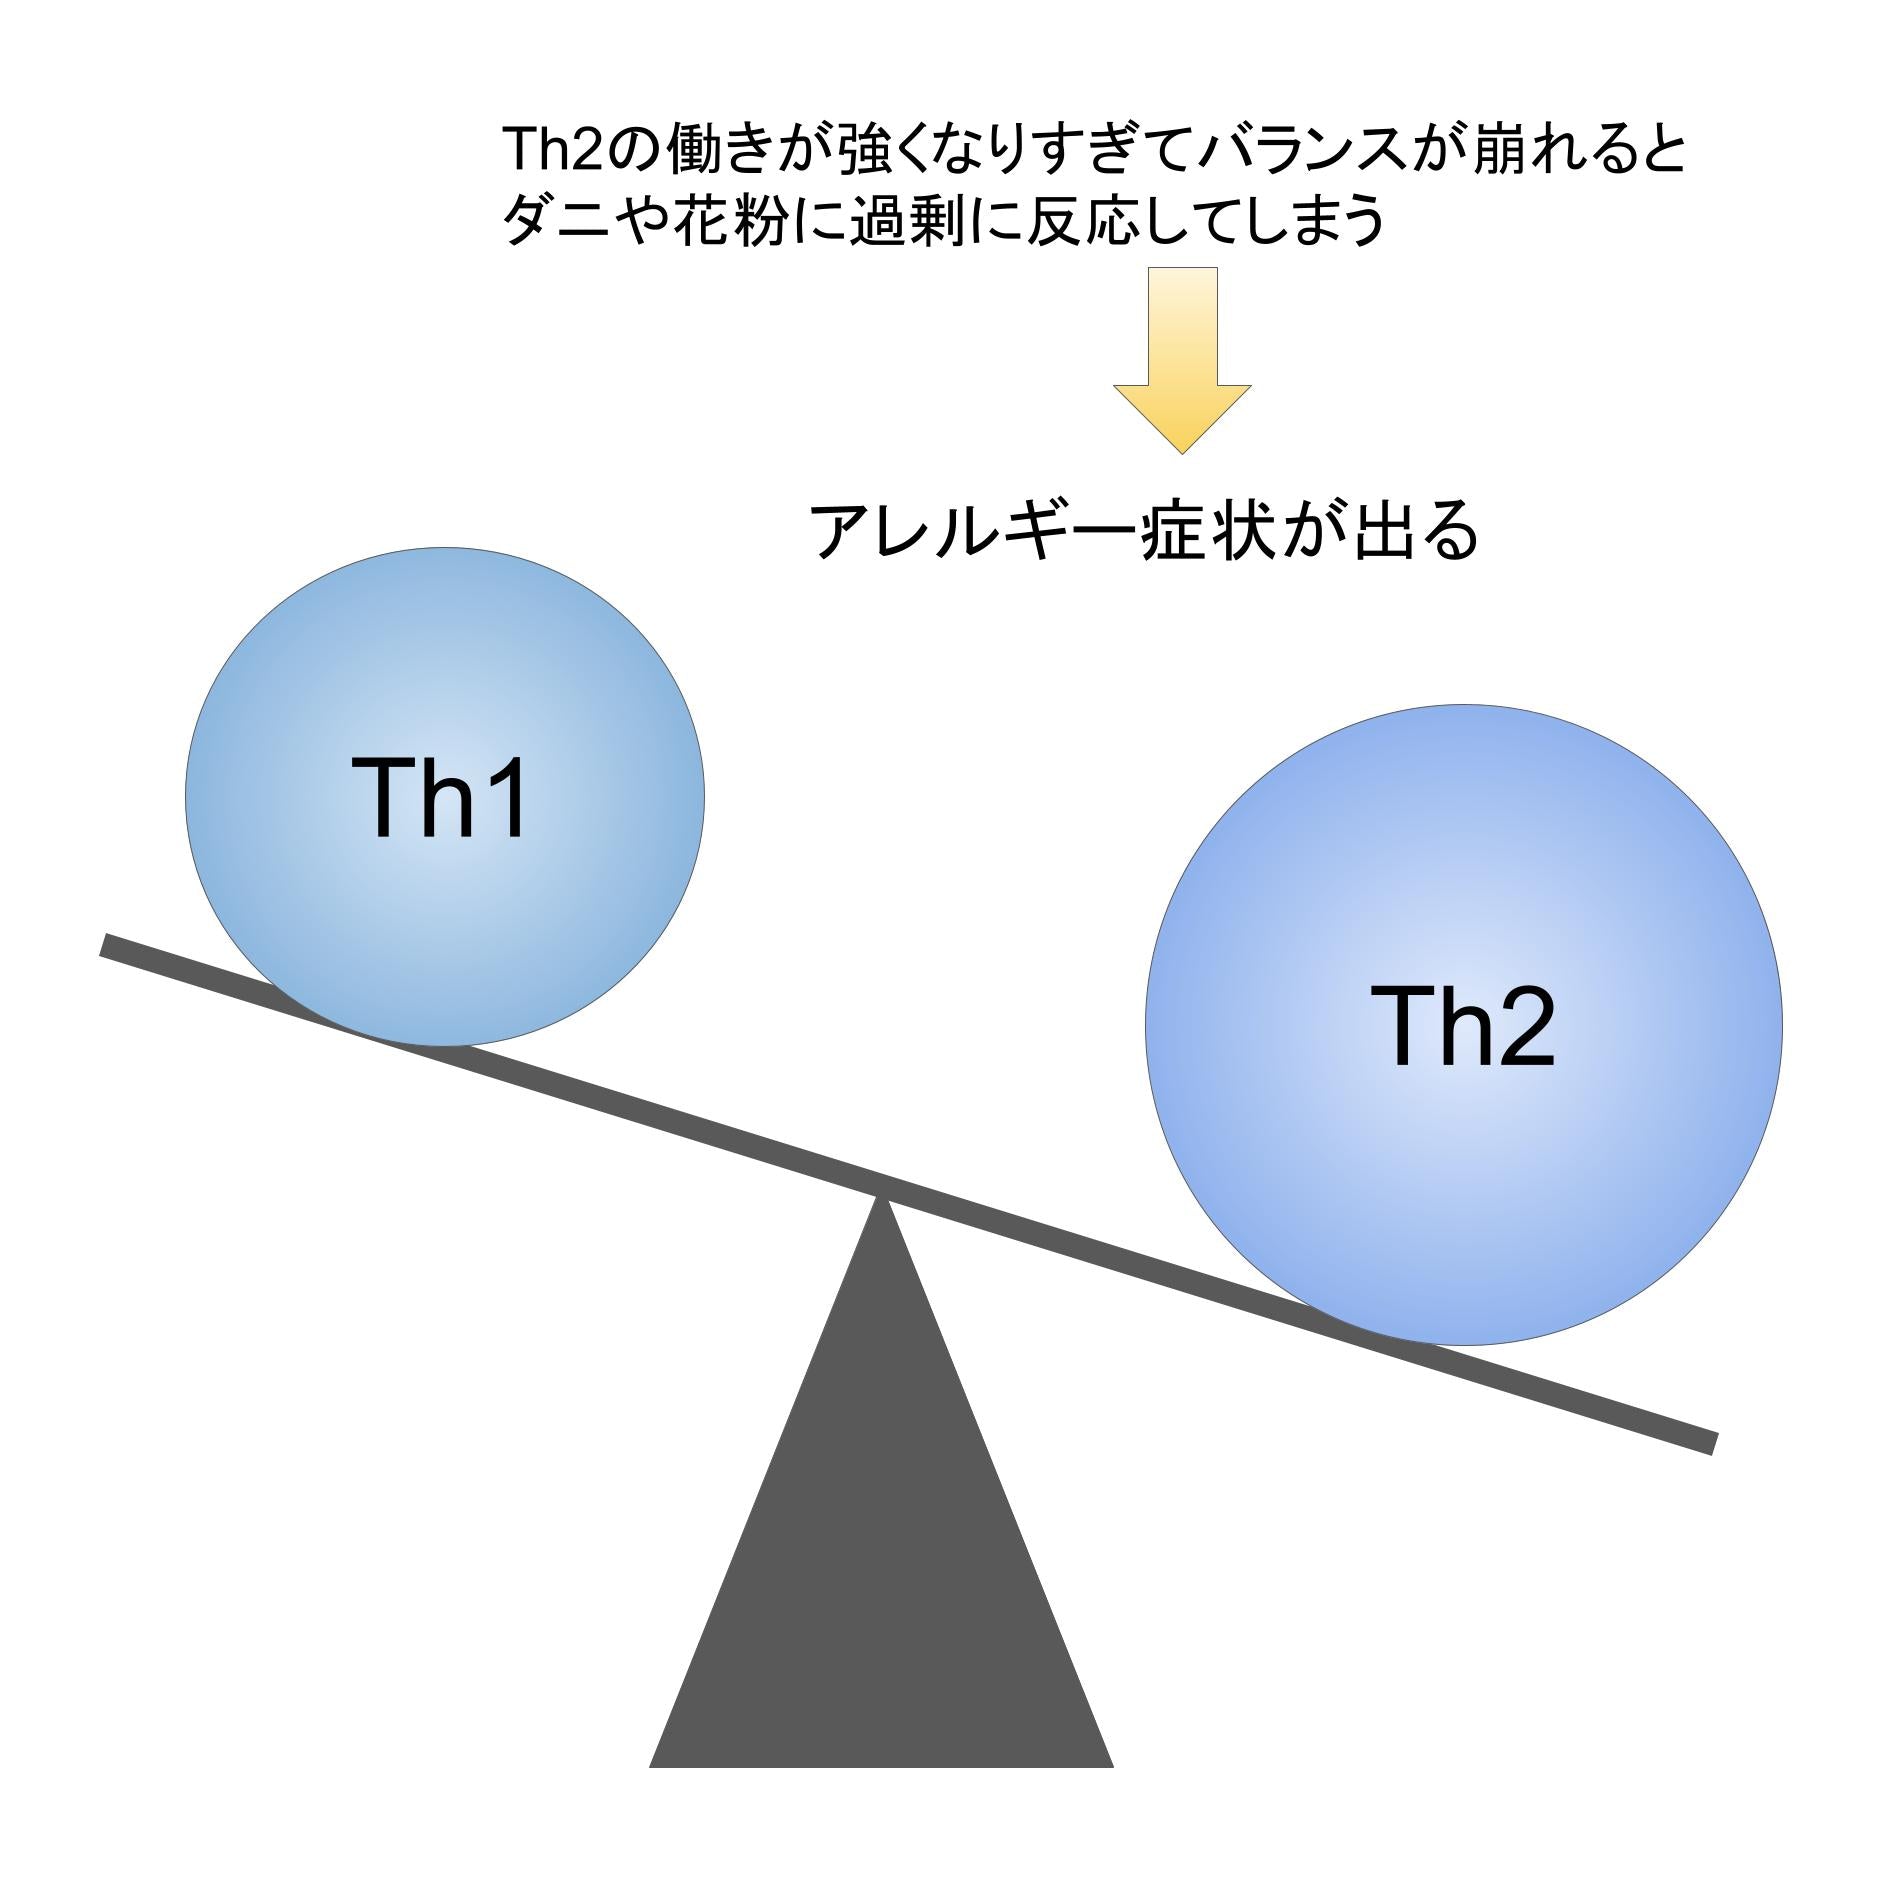 Th1とTh2のバランスが崩れた時のイメージ図